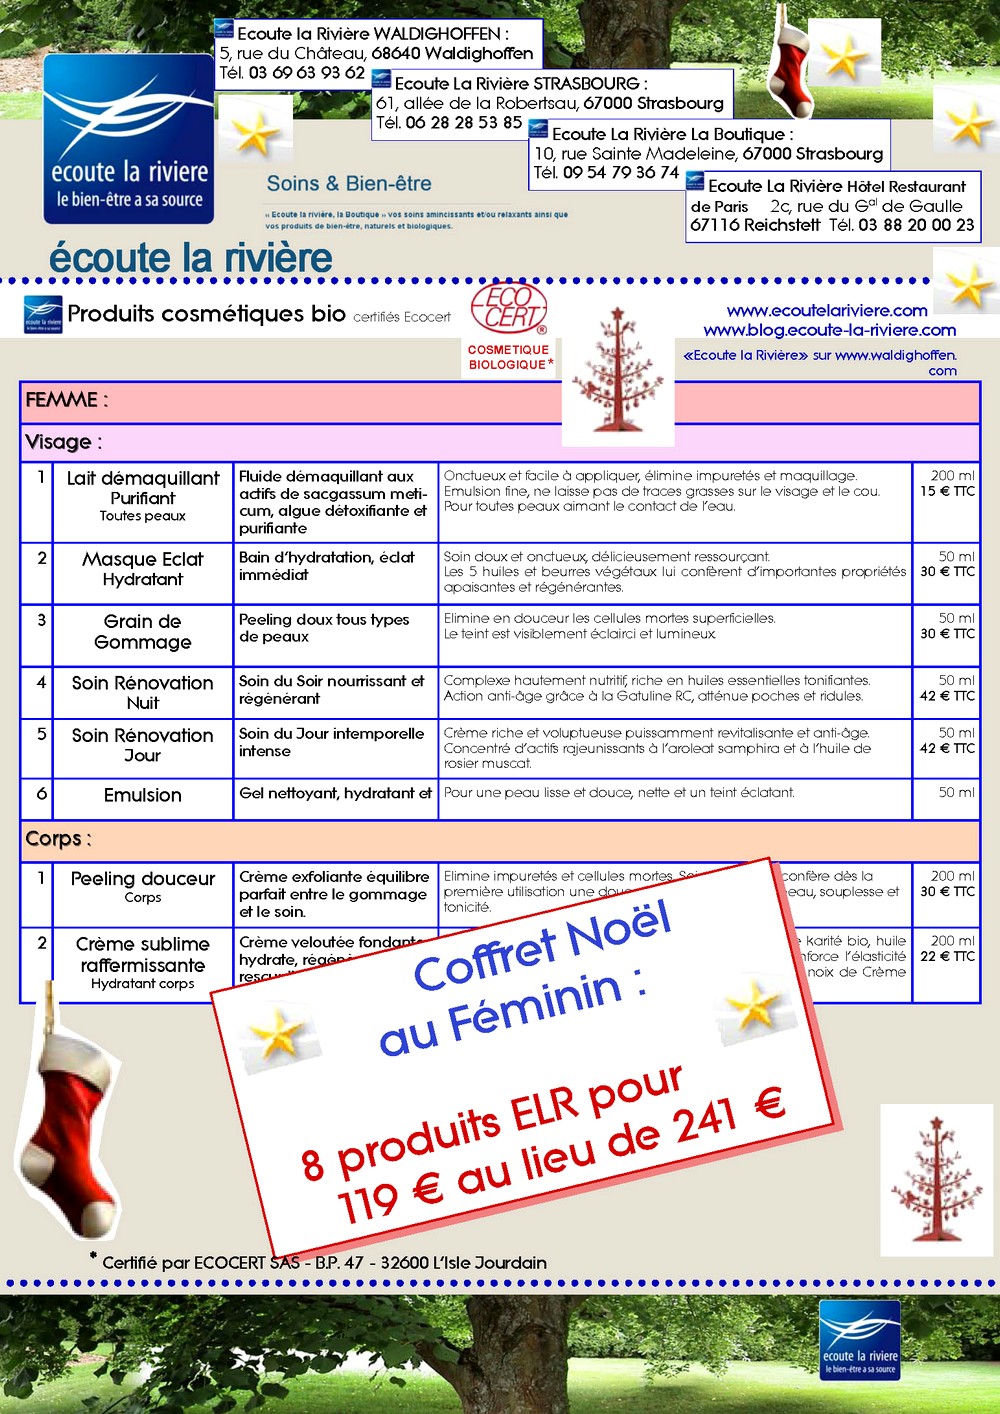 Coffret Noël 2010 Produits Cosmétiques bio ELR Femme